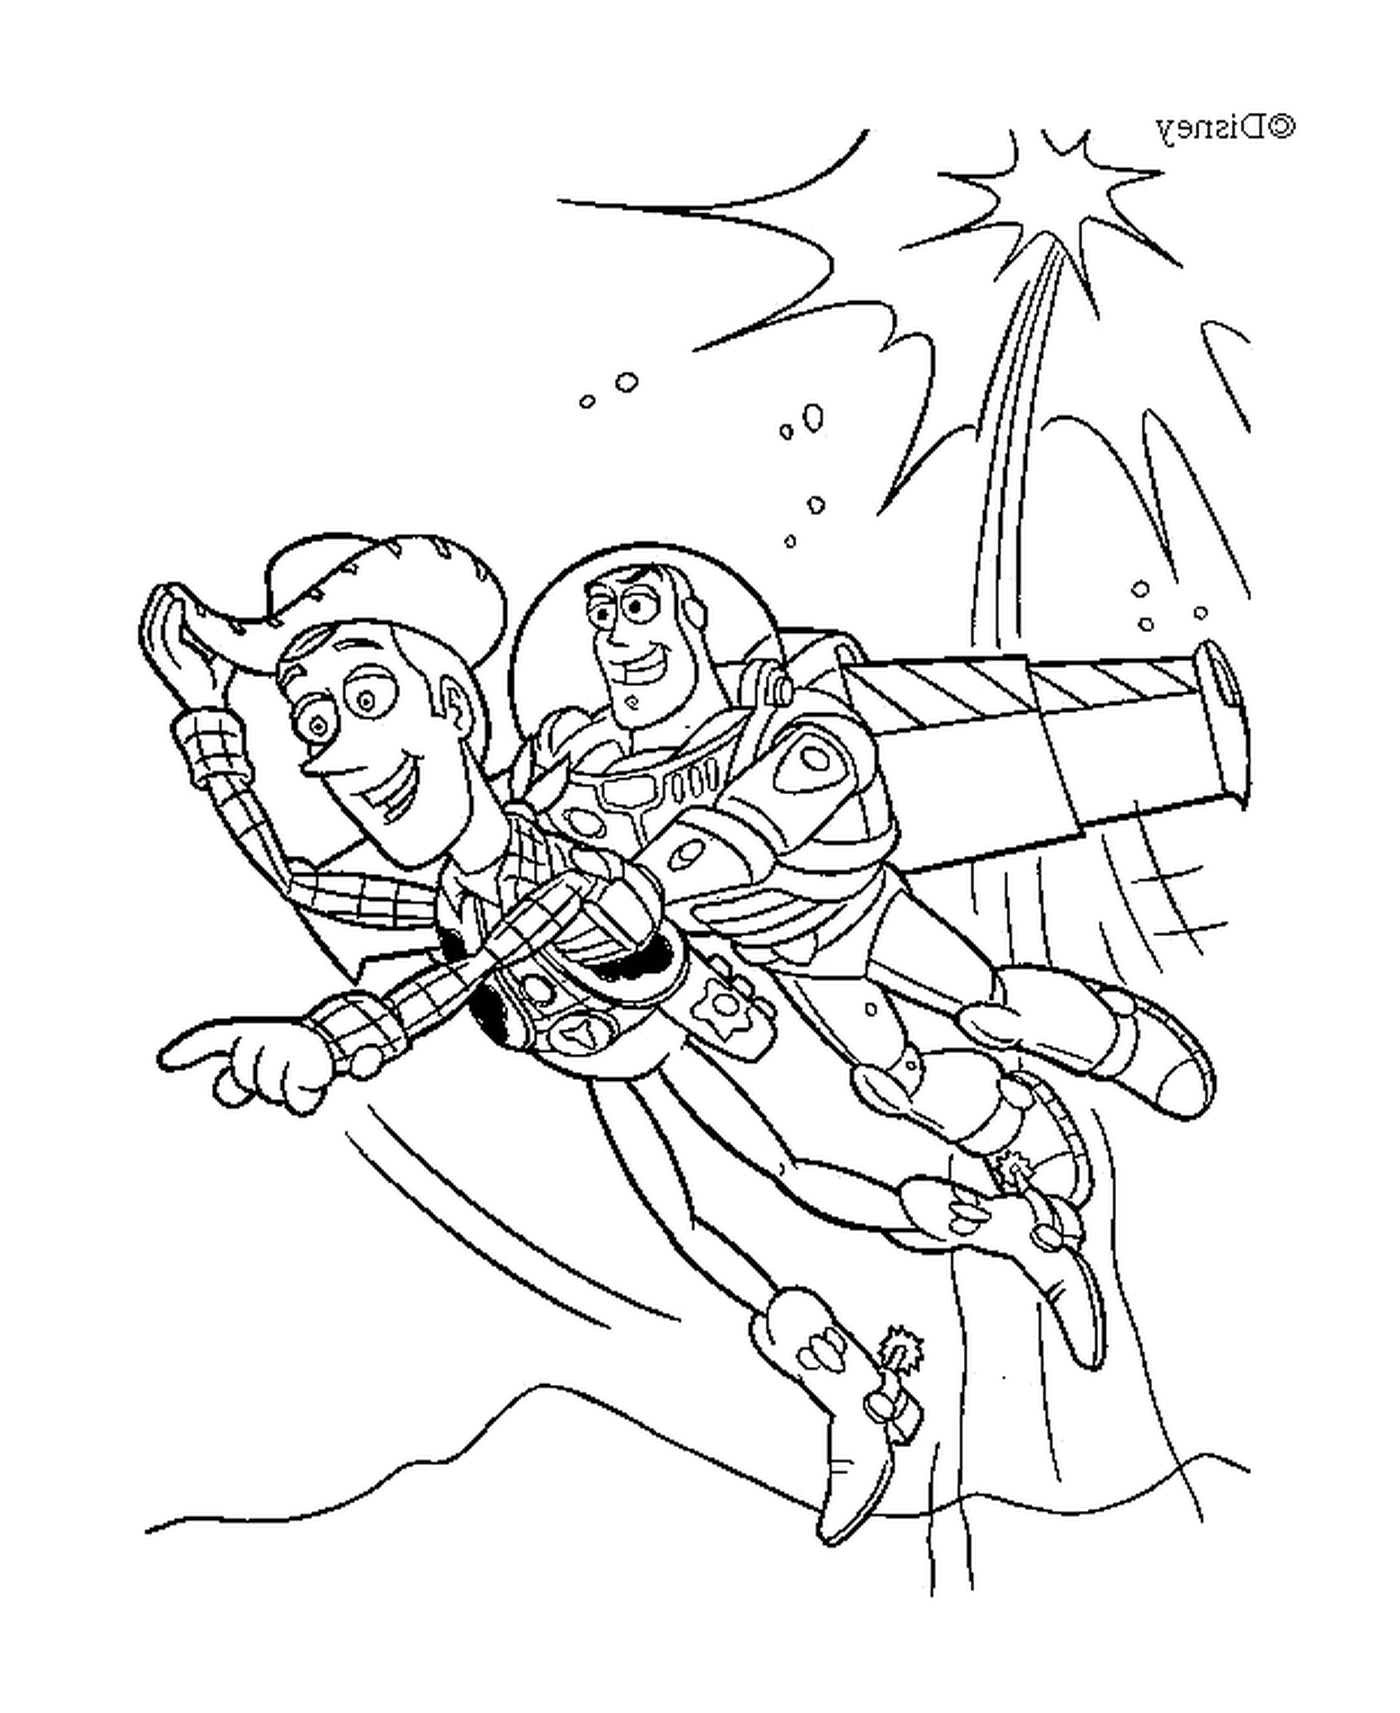  Buzz Light fliegt mit Woody, heroisches Duo 